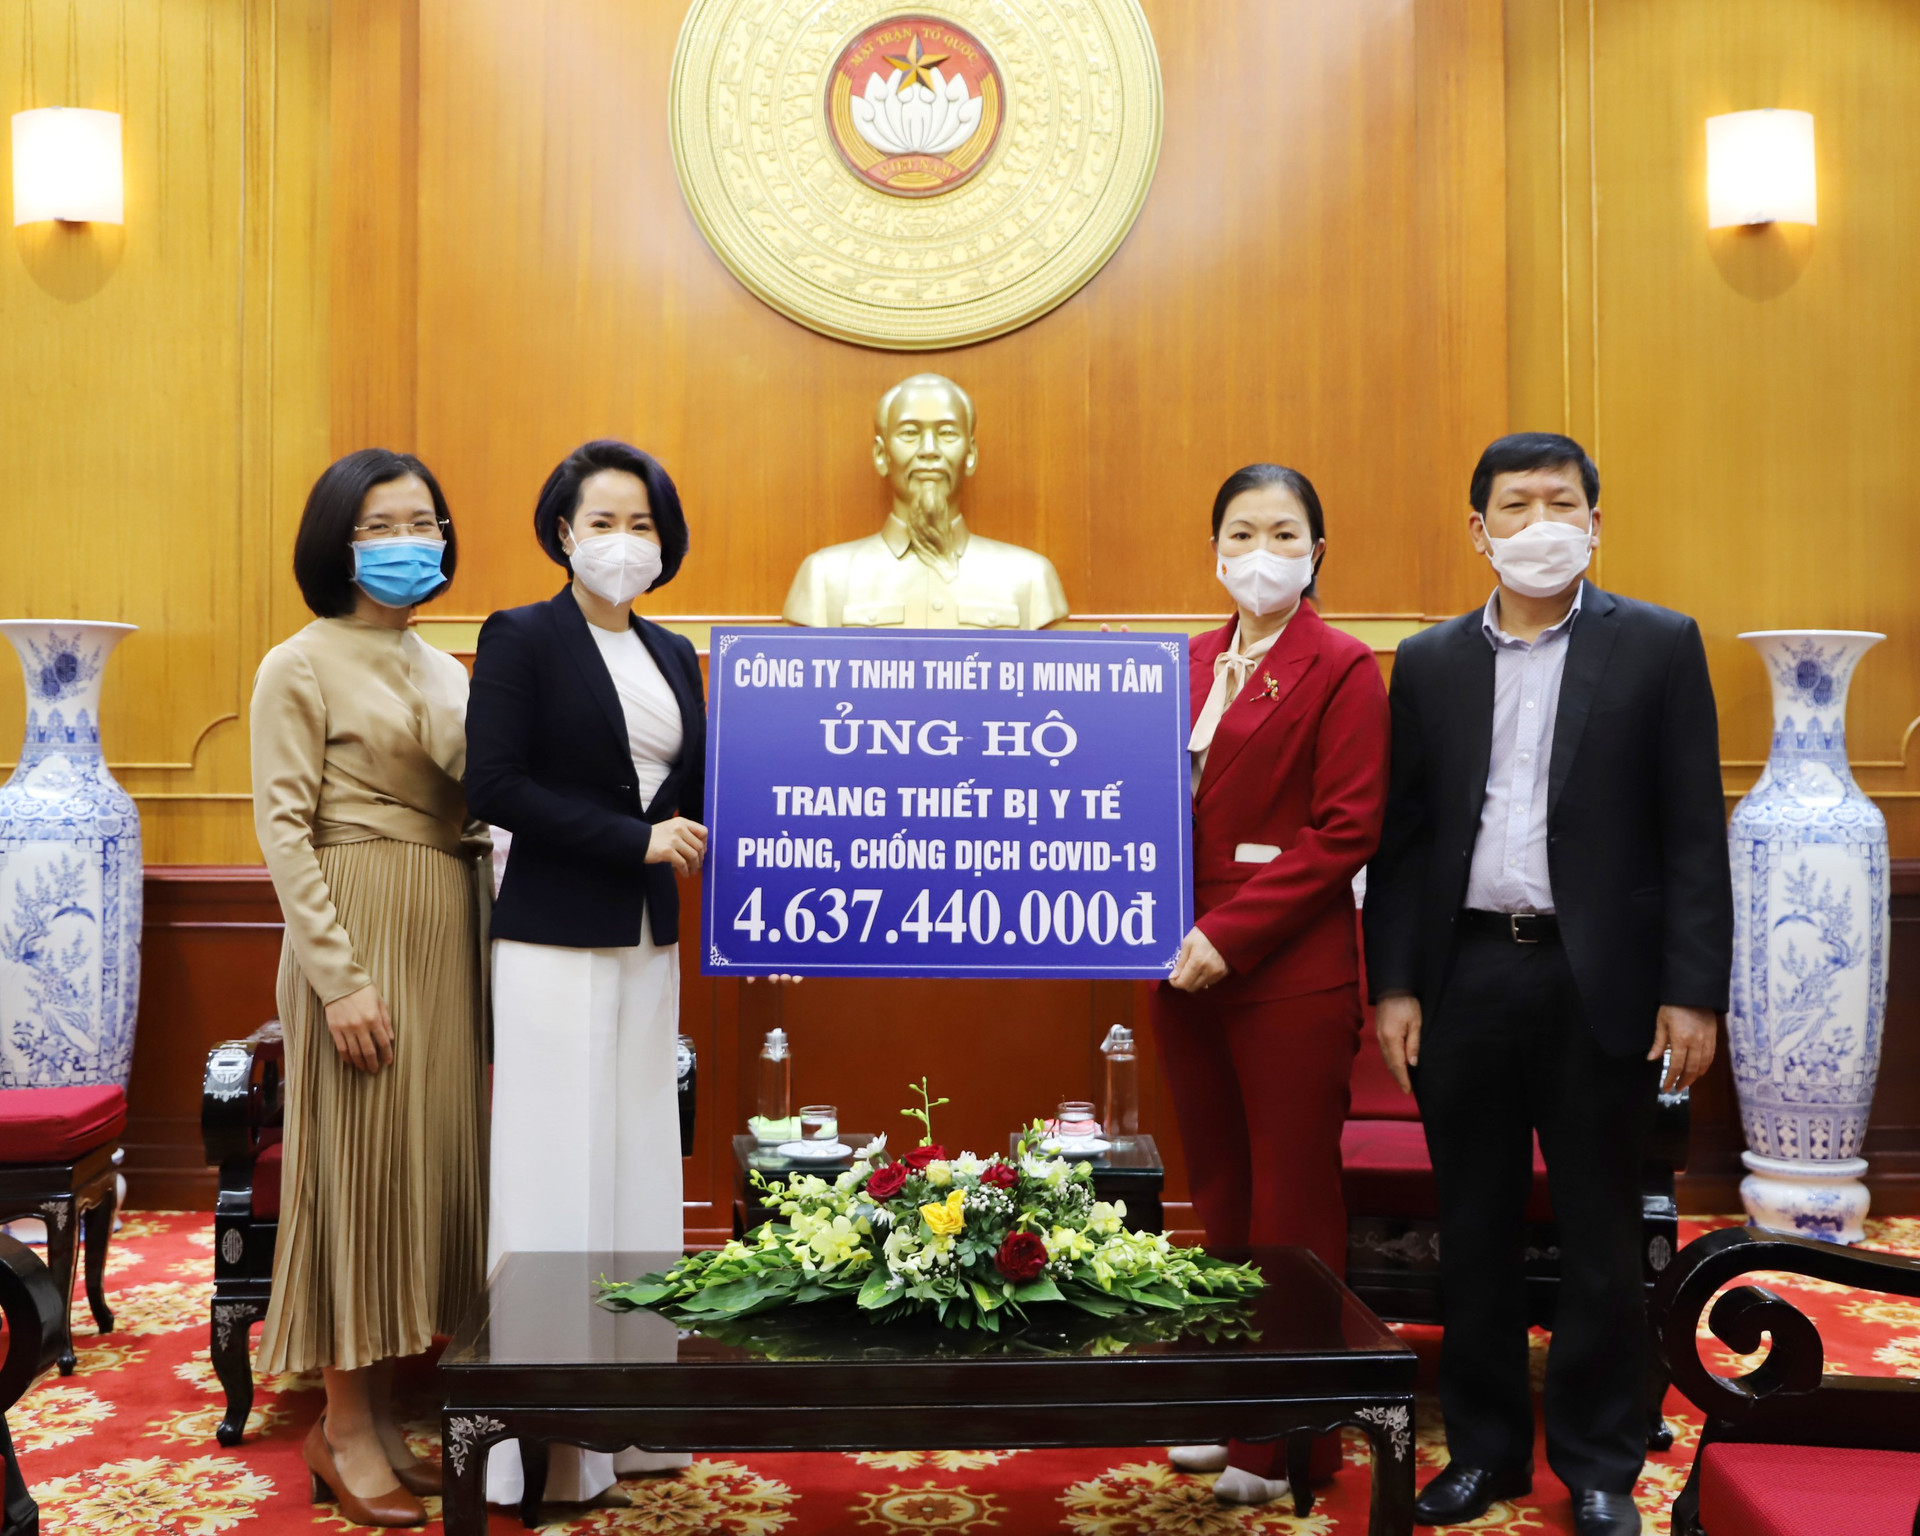 Phó Chủ tịch Trương Thị Ngọc Ánh tiếp nhận ủng hộ từ công ty TNHH Minh Tâm.